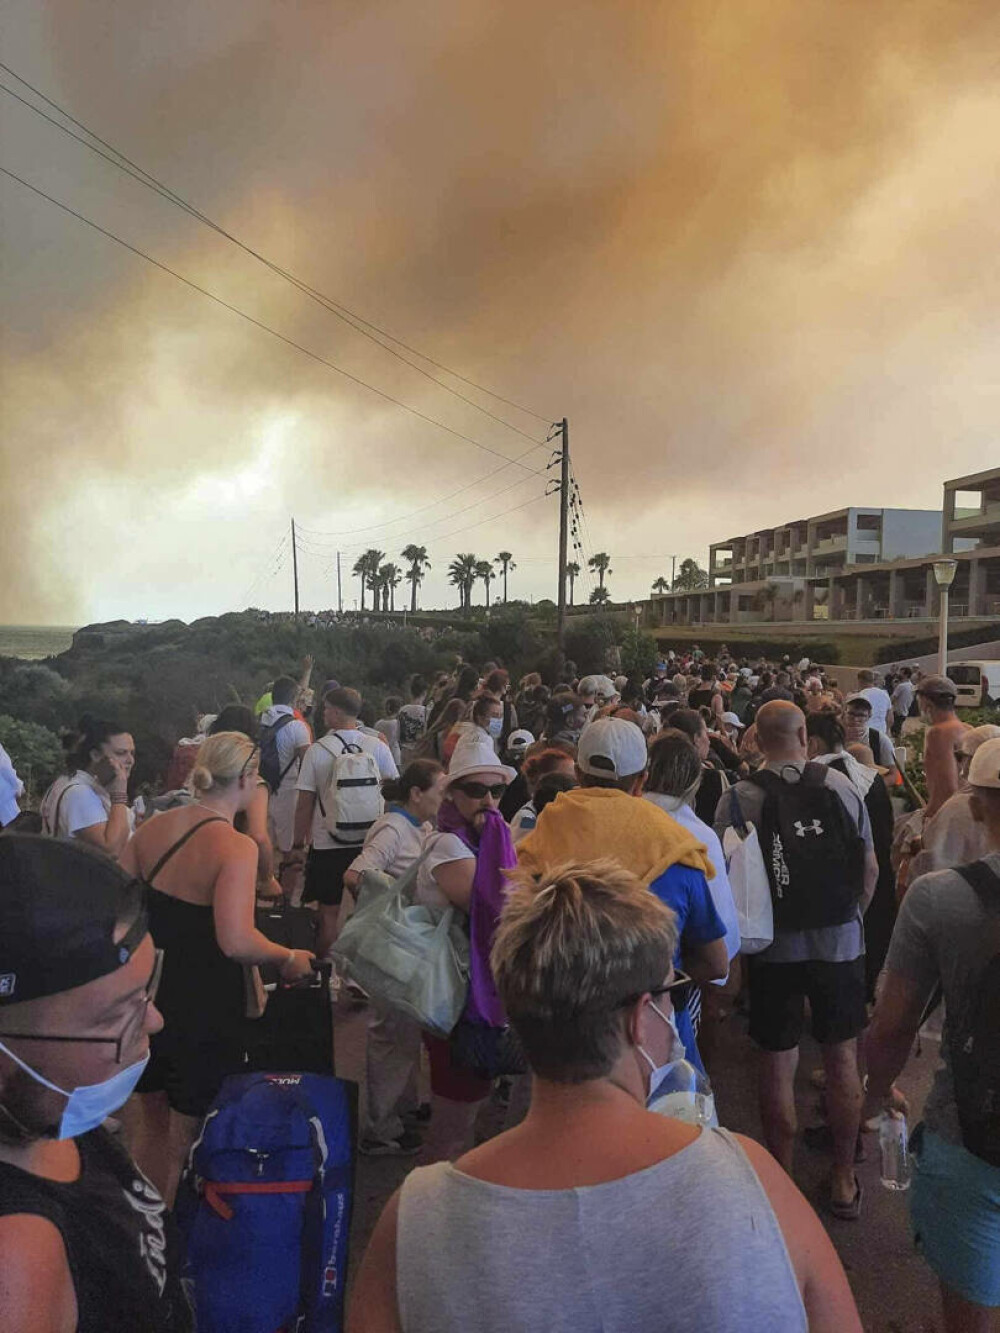 Incendii devastatoare în Rodos. Mii de persoane au fost evacuate și au petrecut noaptea în aer liber | GALERIE FOTO - Imaginea 4